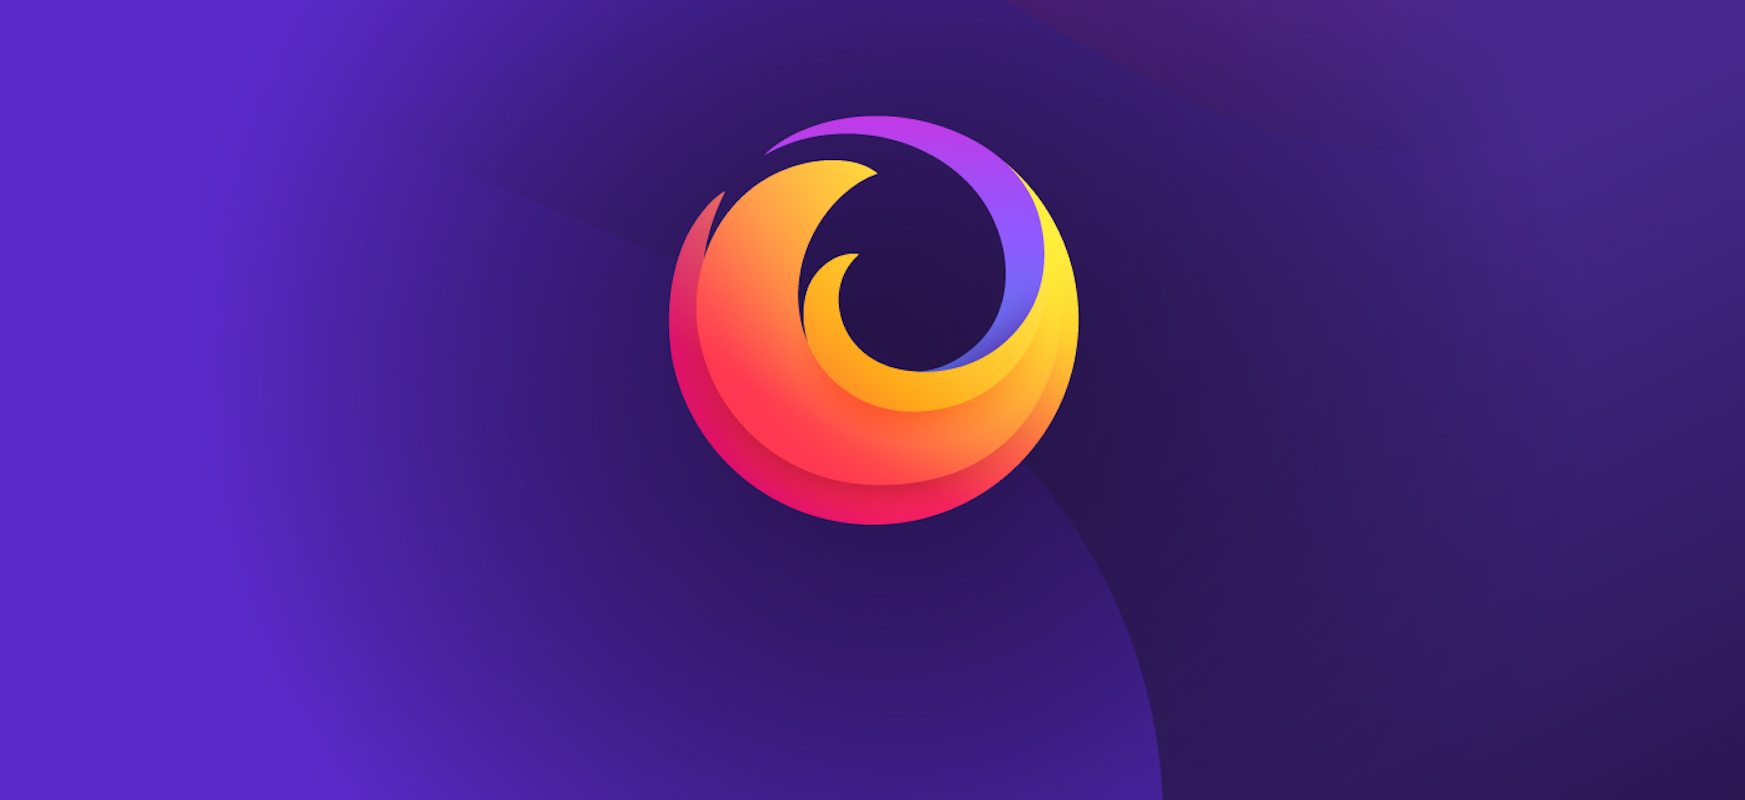 Firefox berriak gure pasahitza filtratu dela ohartaraziko dizu eta erabilitako guneak zerrendatuko ditu